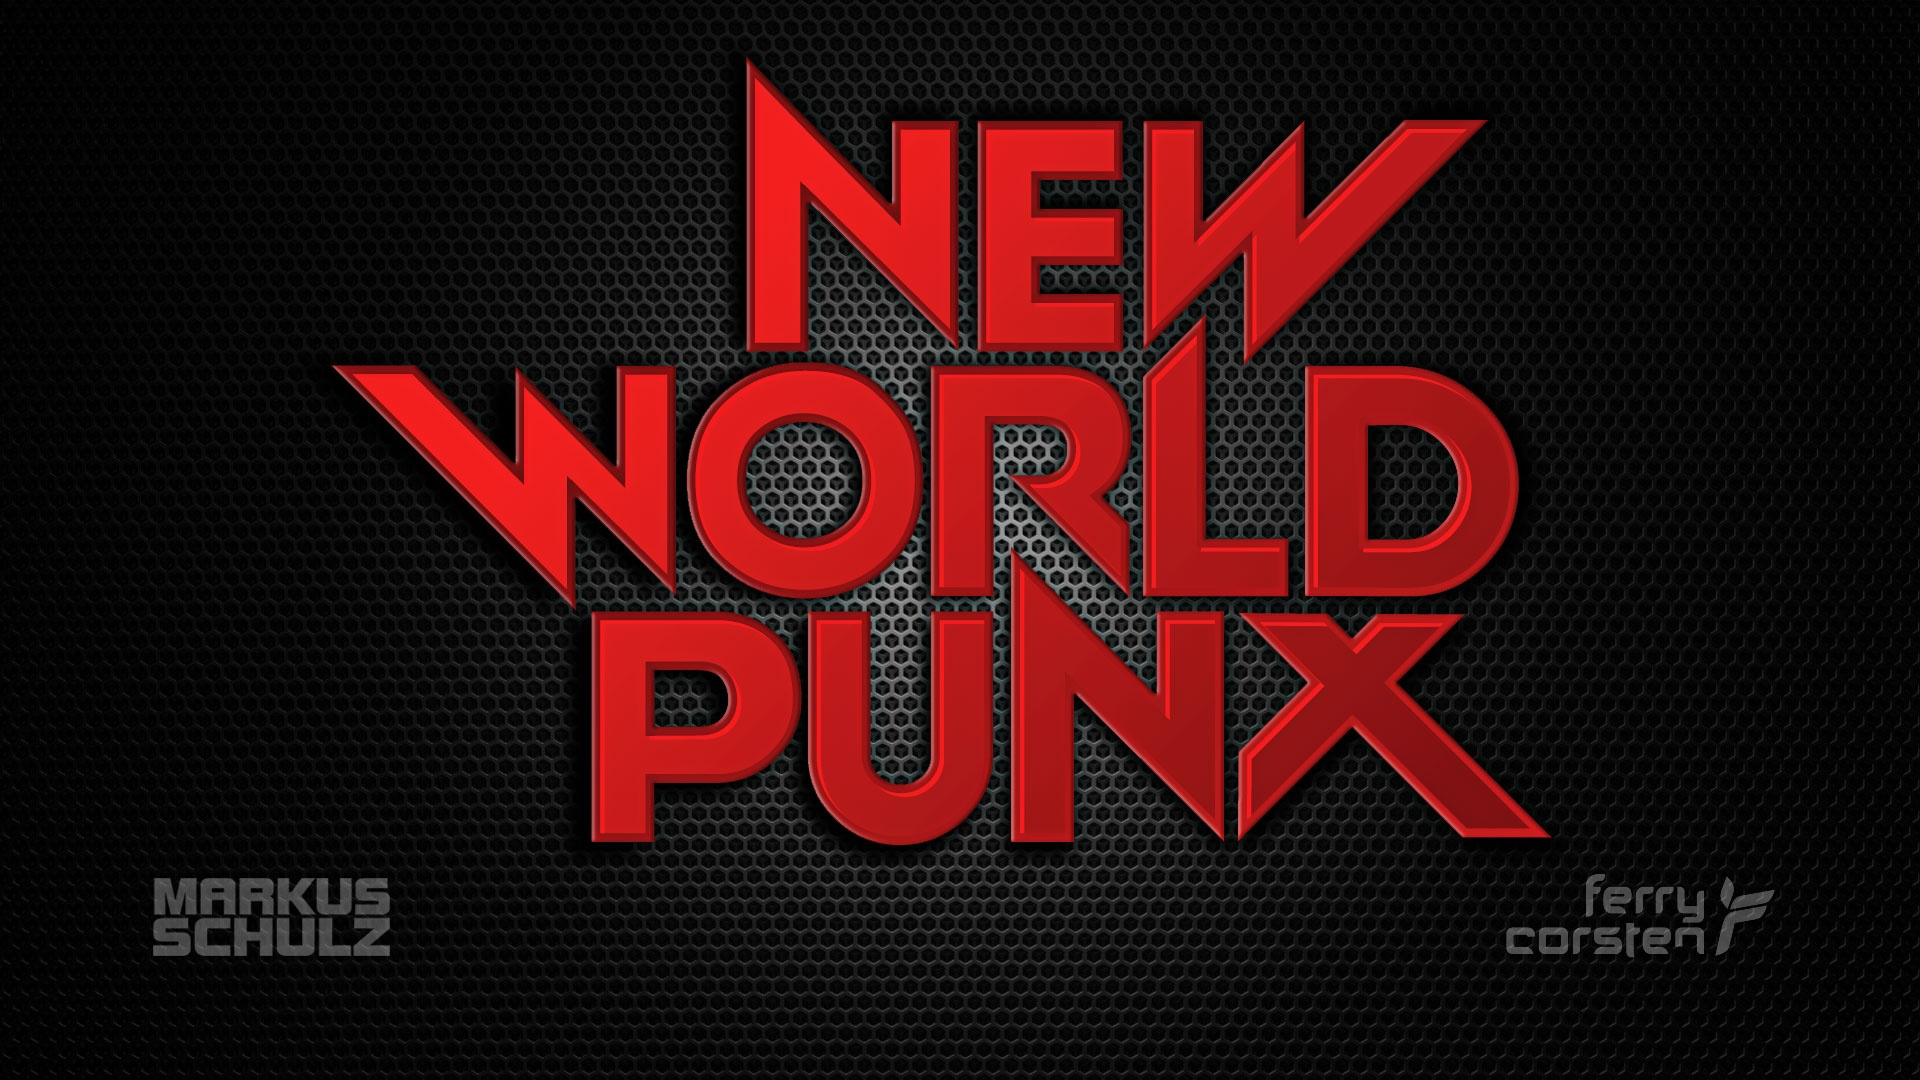 Music New World Punx HD Wallpaper | Background Image